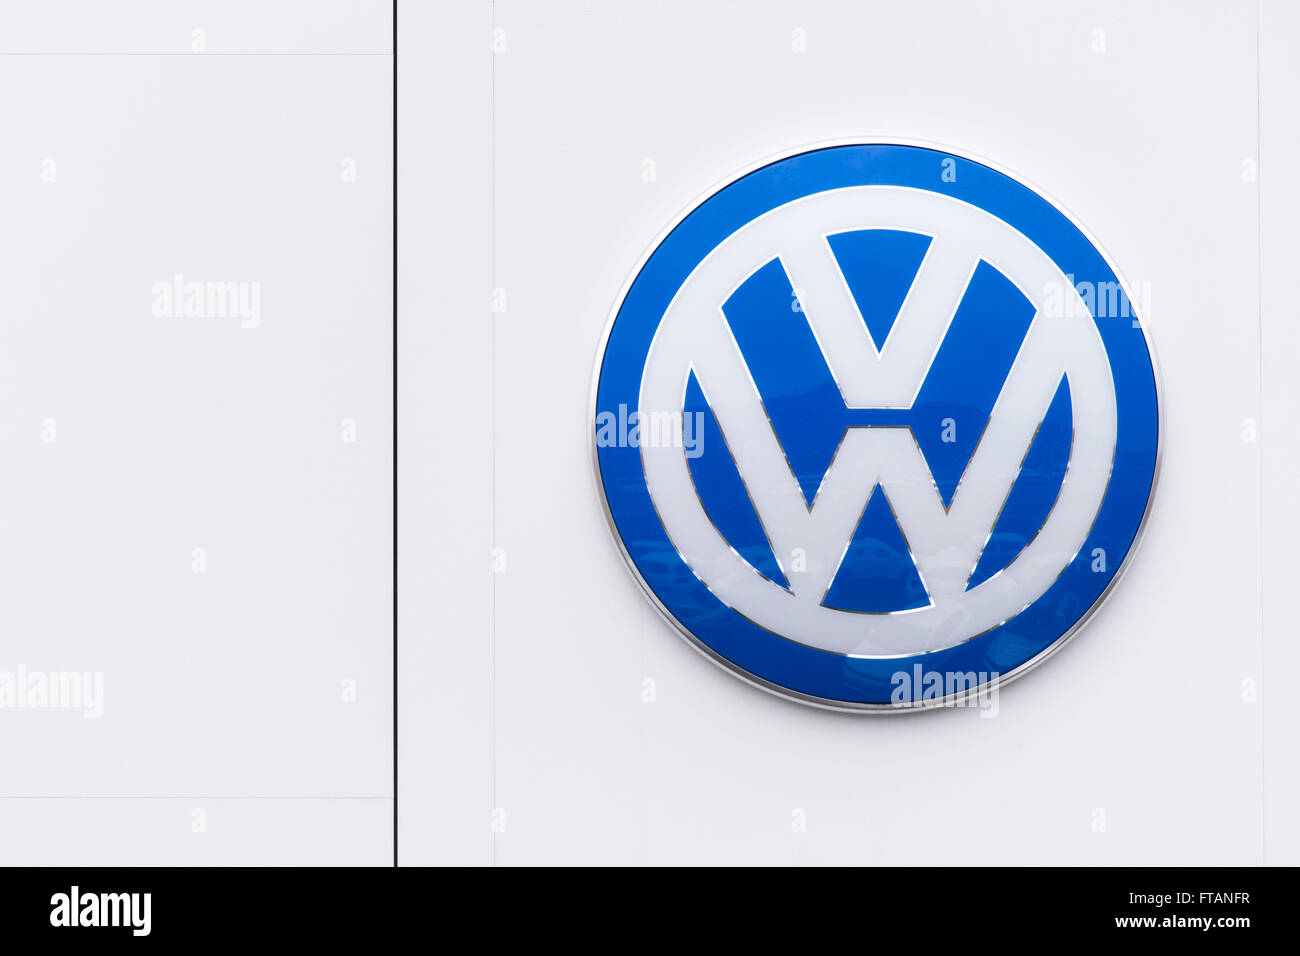 Volkswagen (VW) Auto-Hersteller-Schild-Logo. Stockfoto